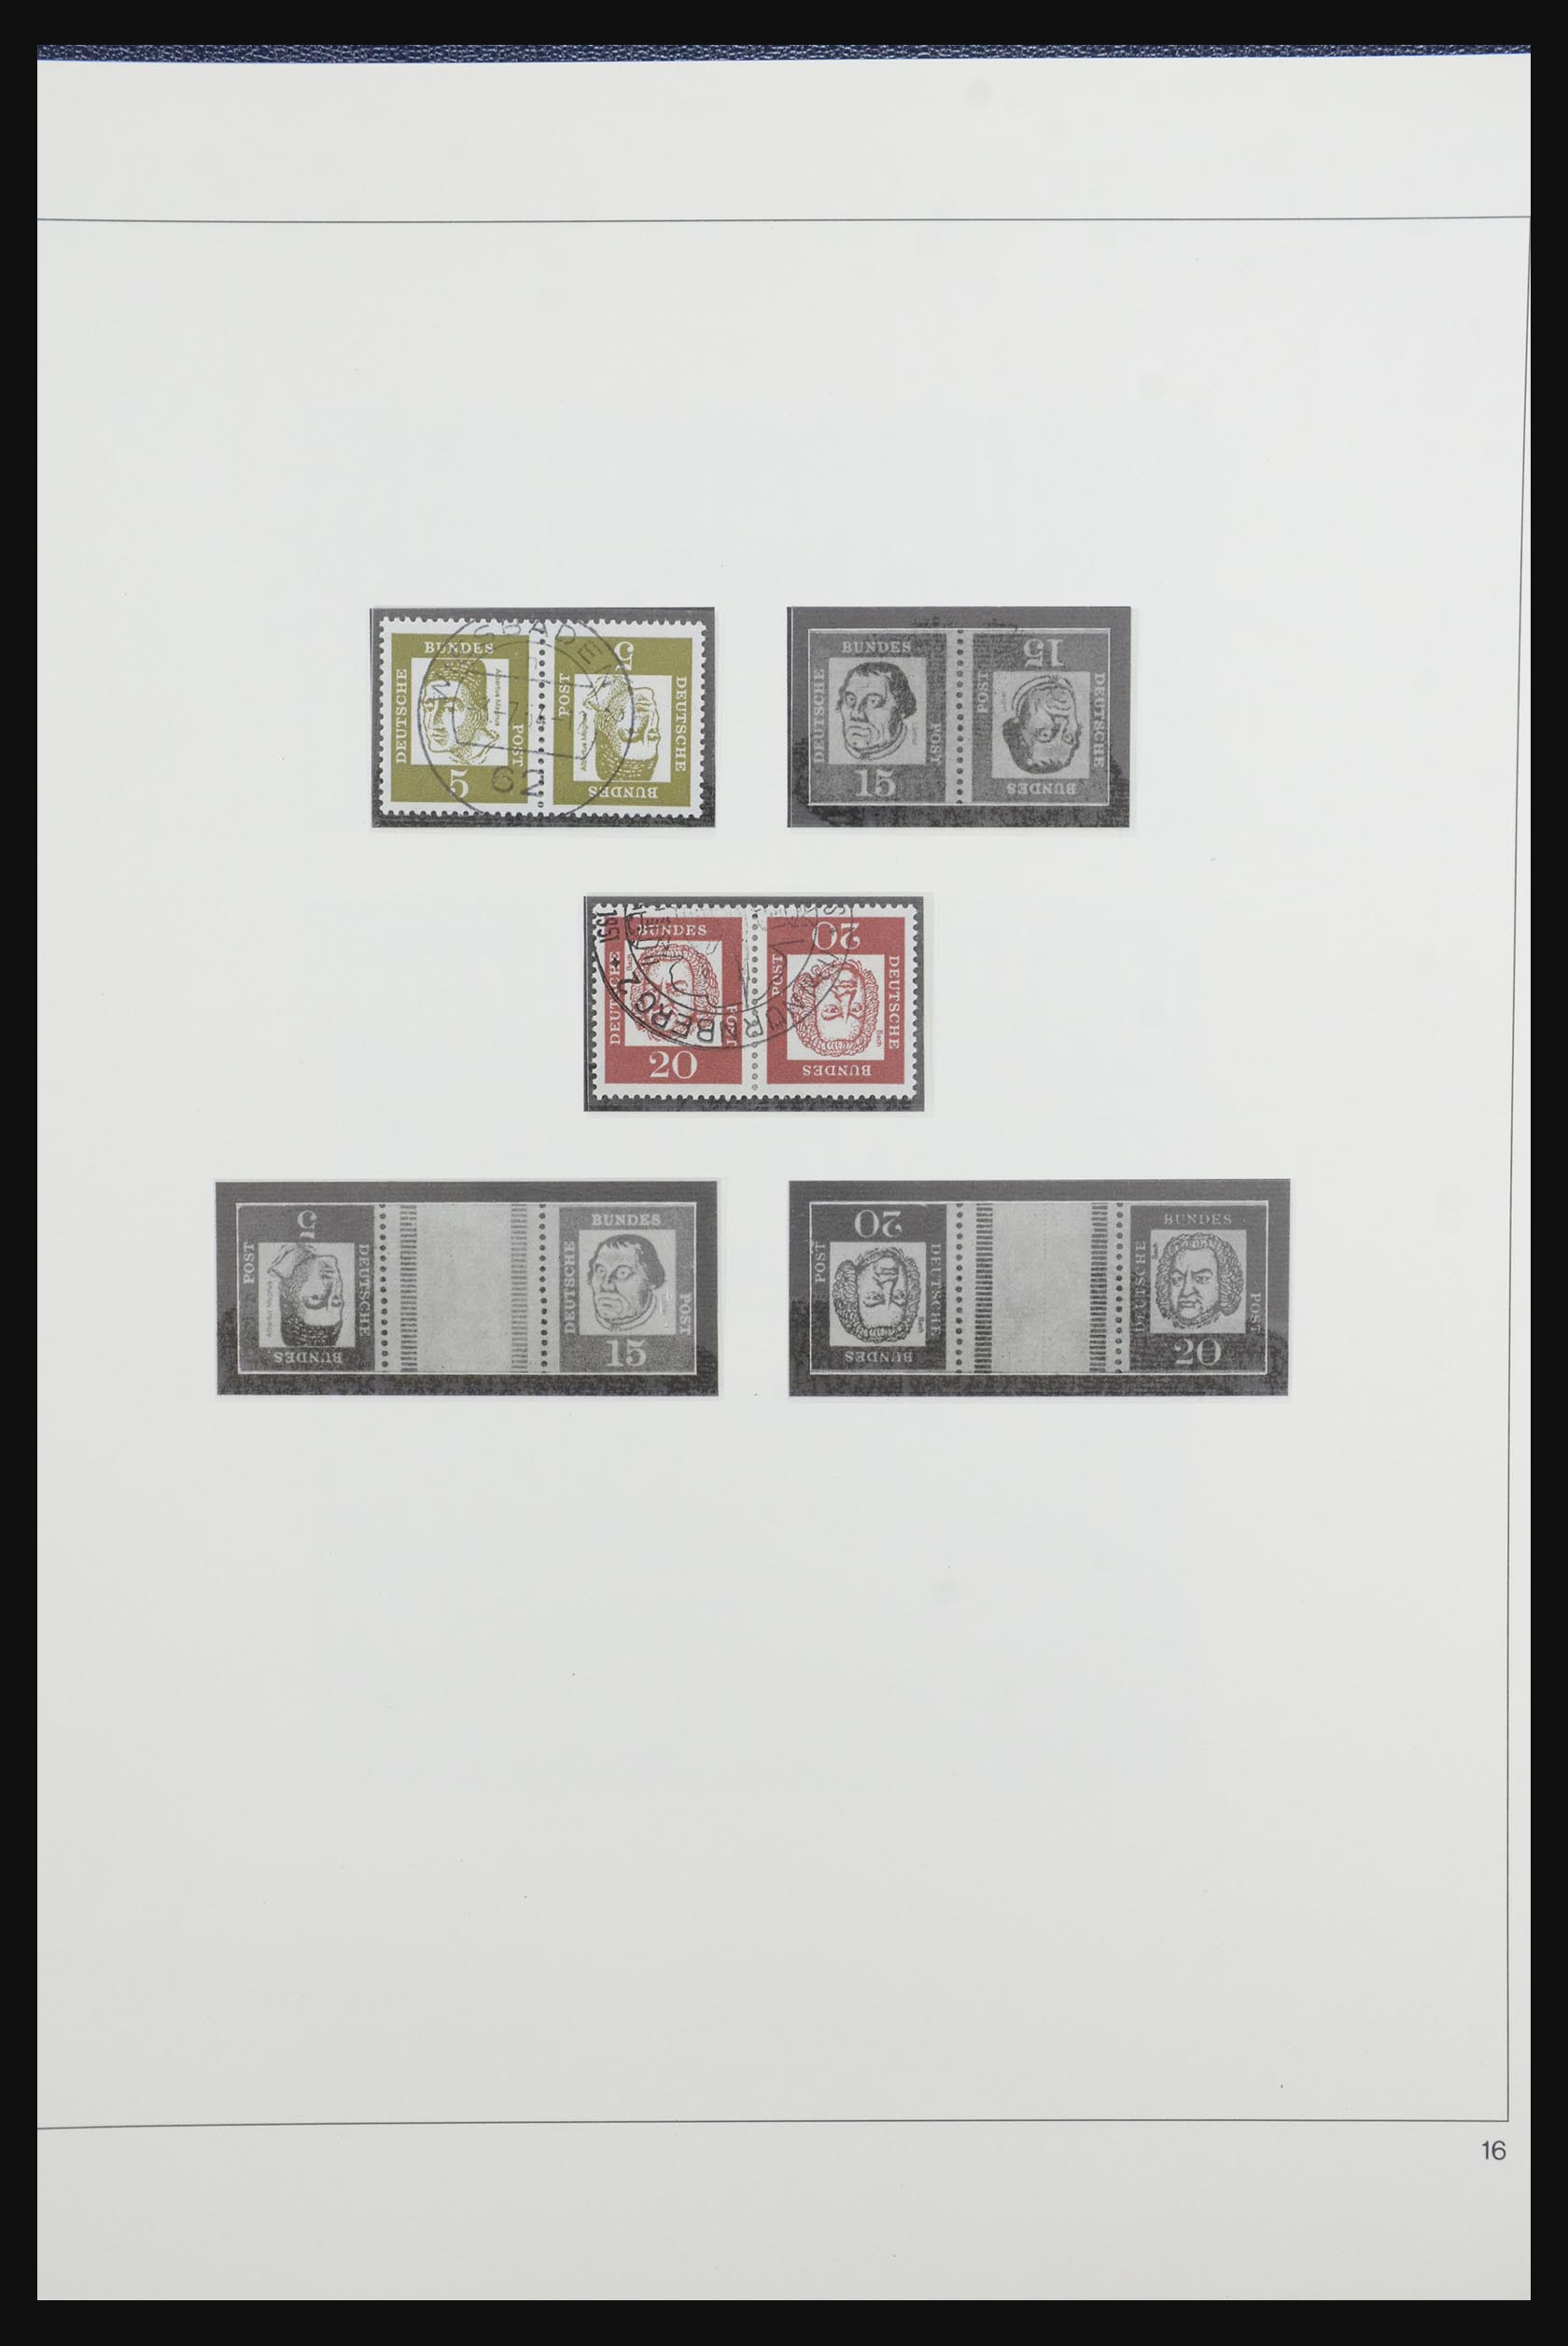 31842 021 - 31842 Bundespost combinations 1951-2003.